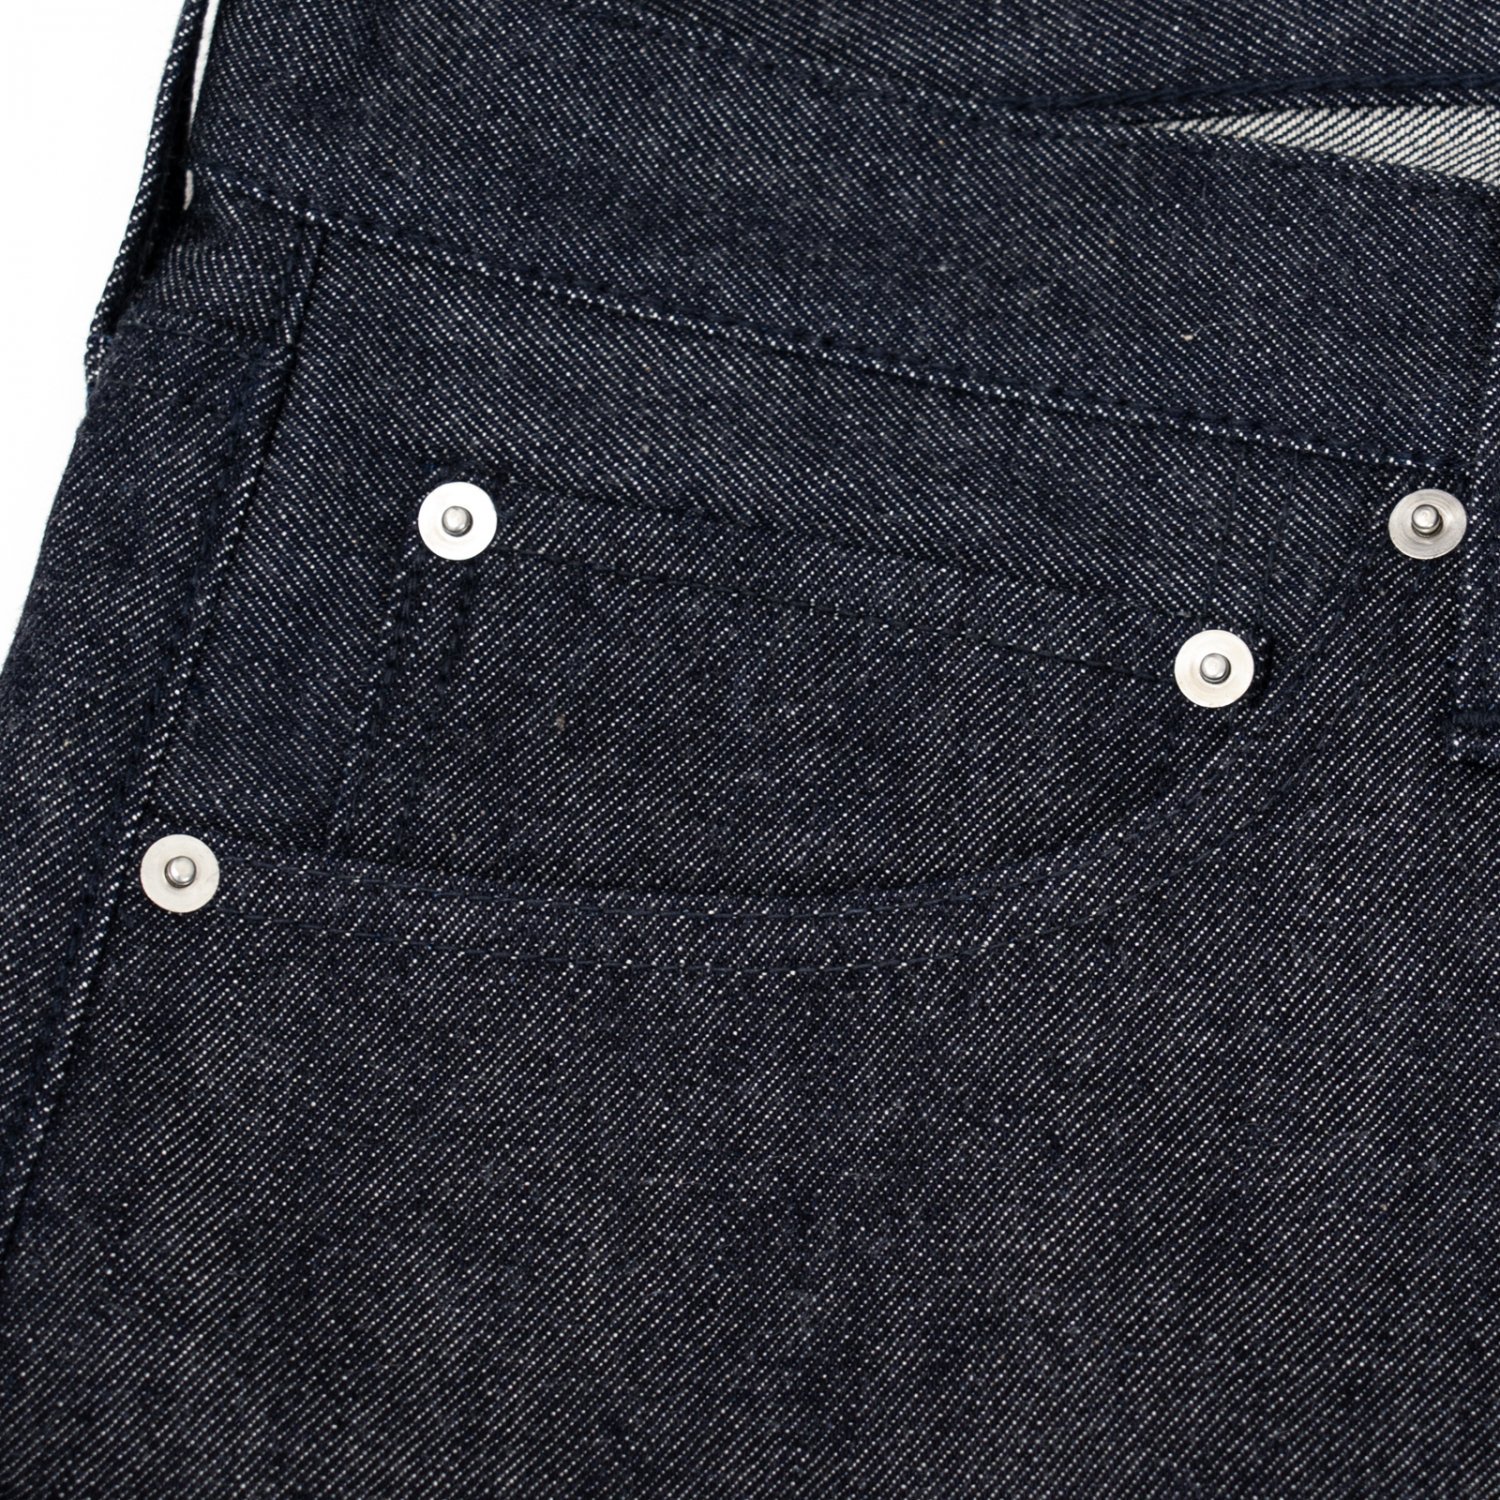 NORITAKE/HARADA * Denim Pants 34inch Short